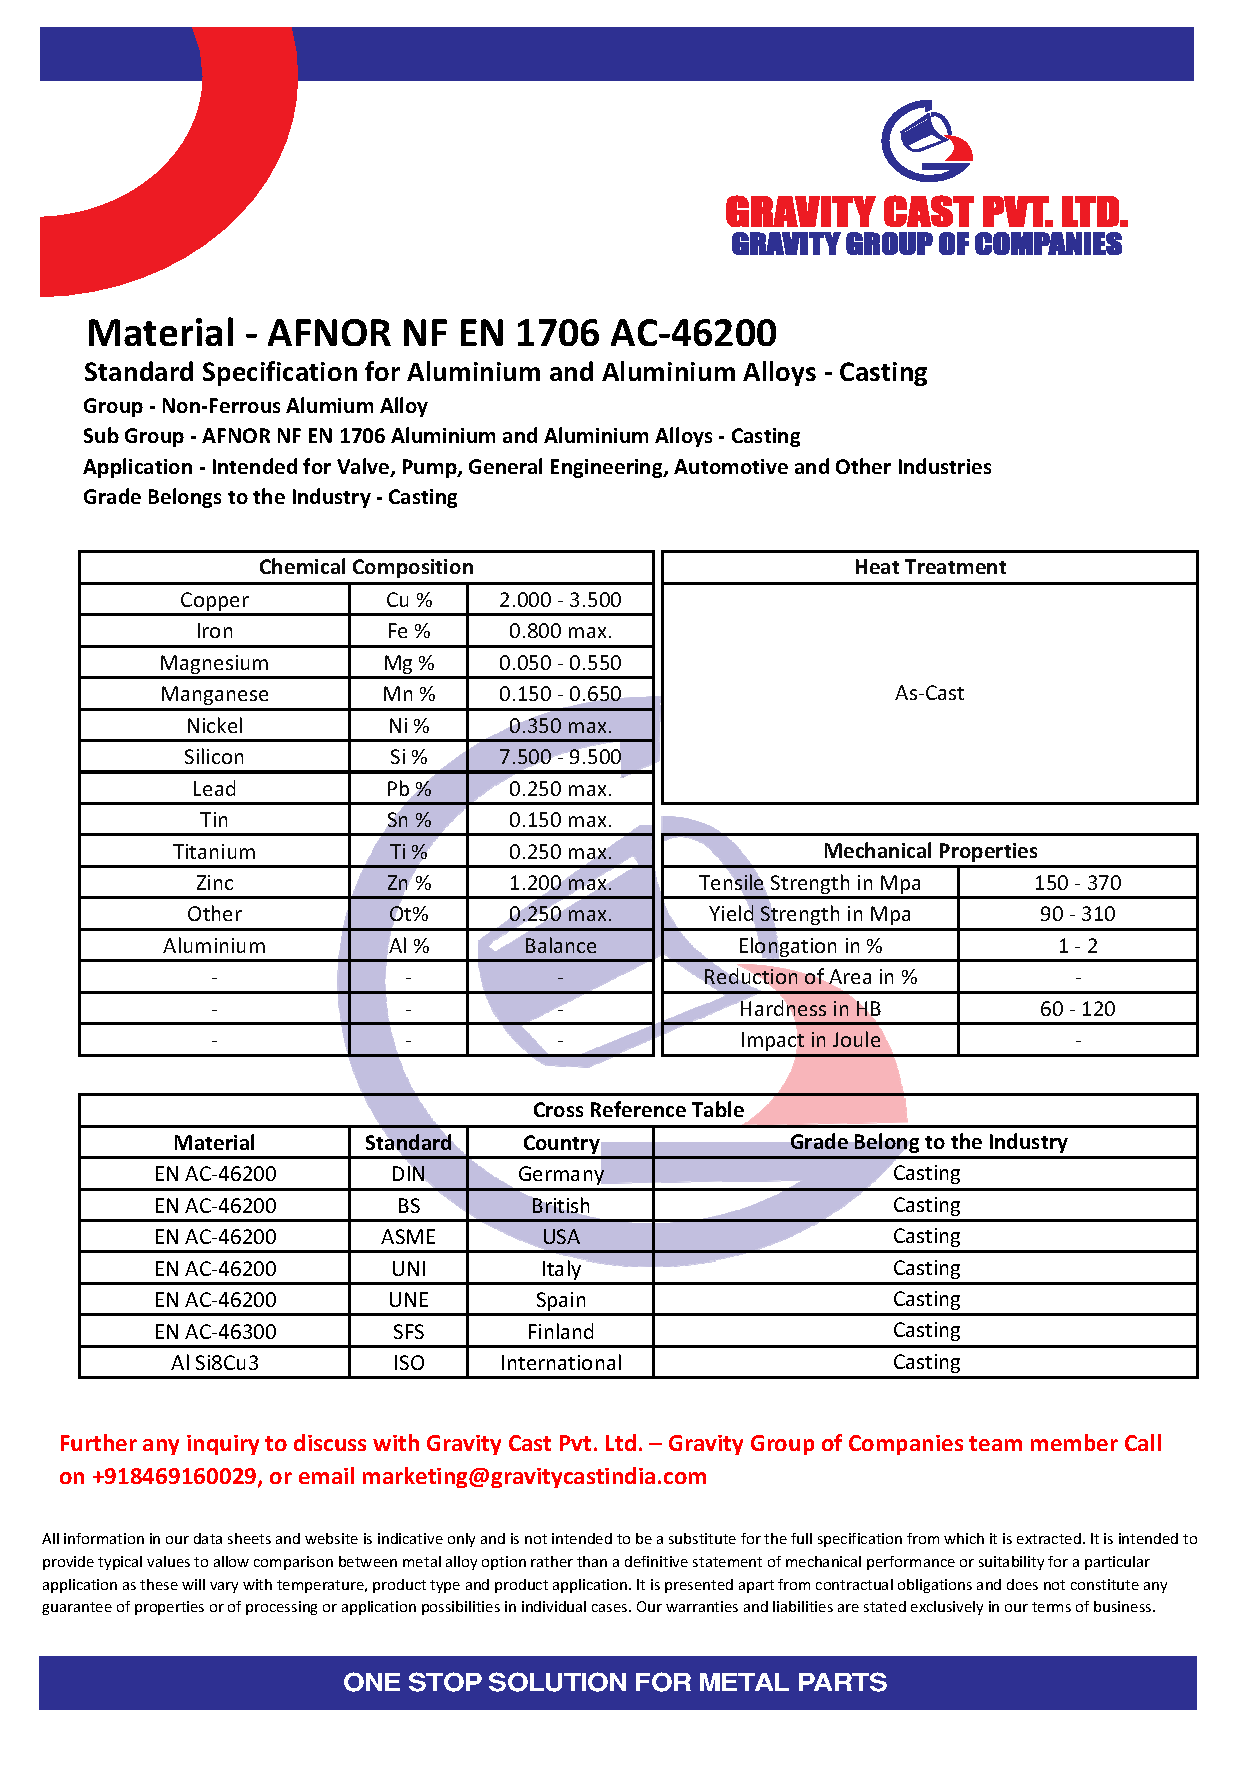 AFNOR NF EN 1706 AC-46200.pdf